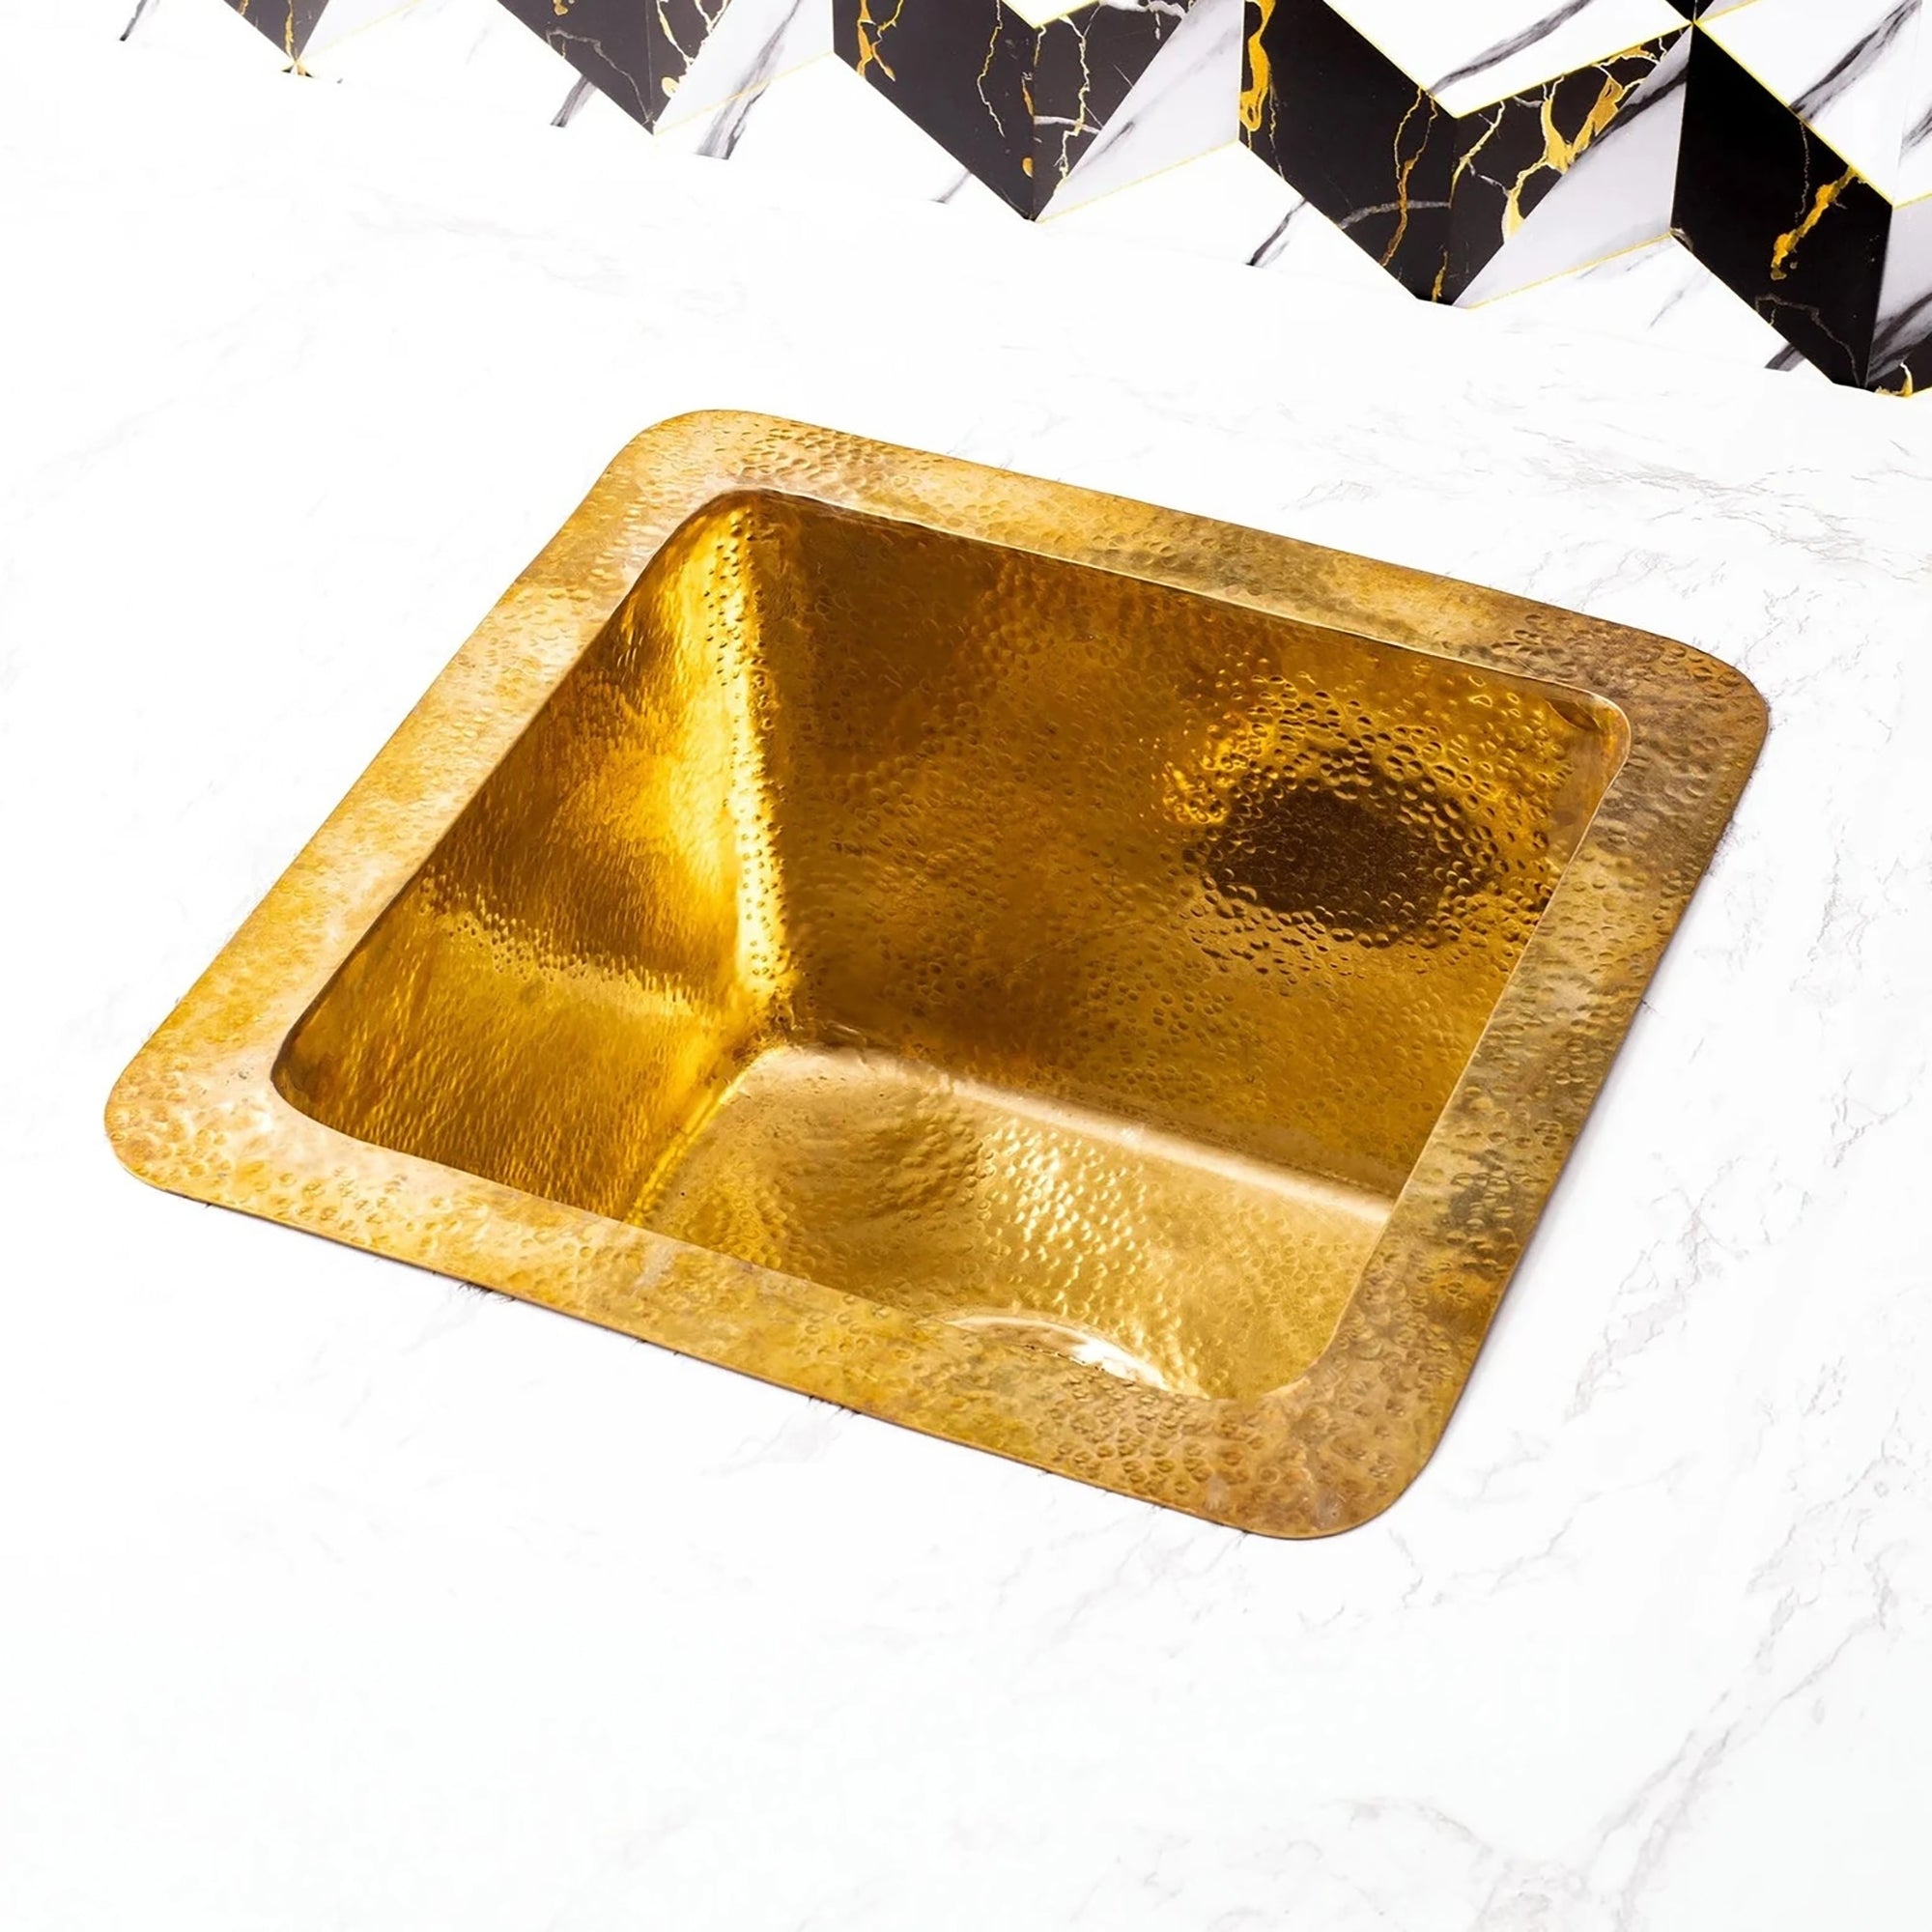 brass undermount kitchen sink